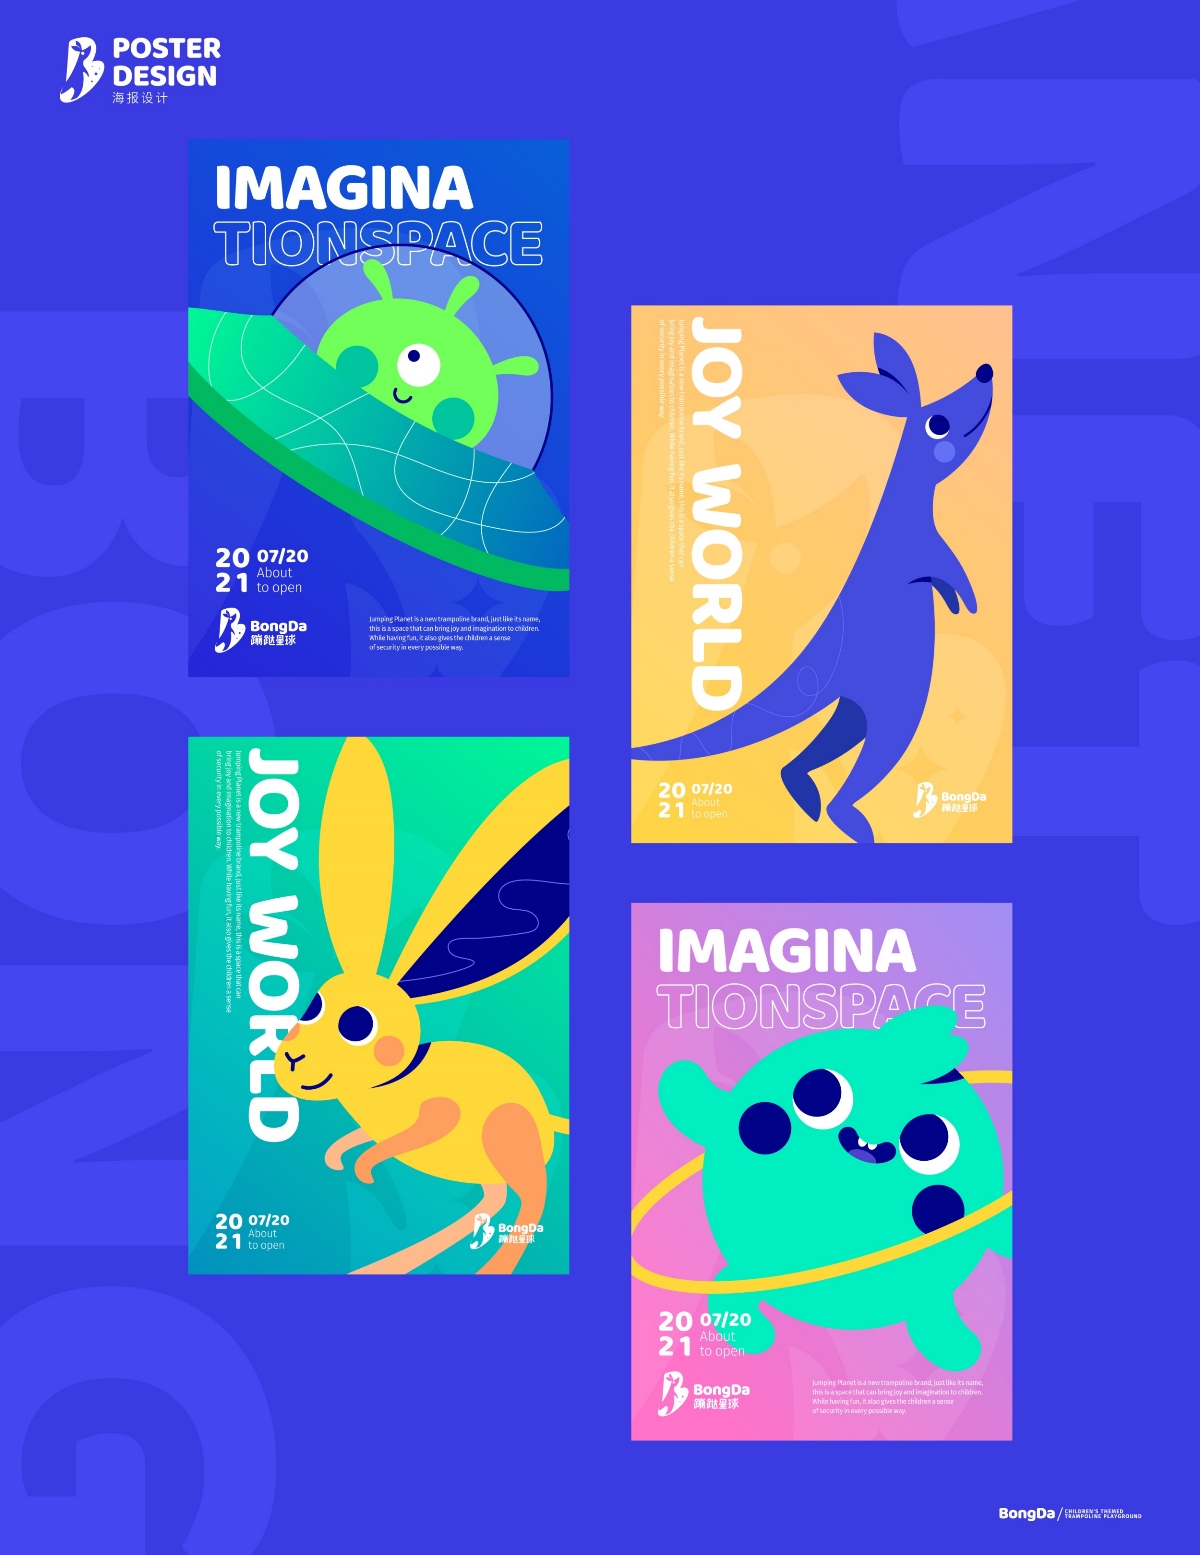 BongDa 蹦跶星球 儿童蹦床乐园品牌设计 儿童VI设计